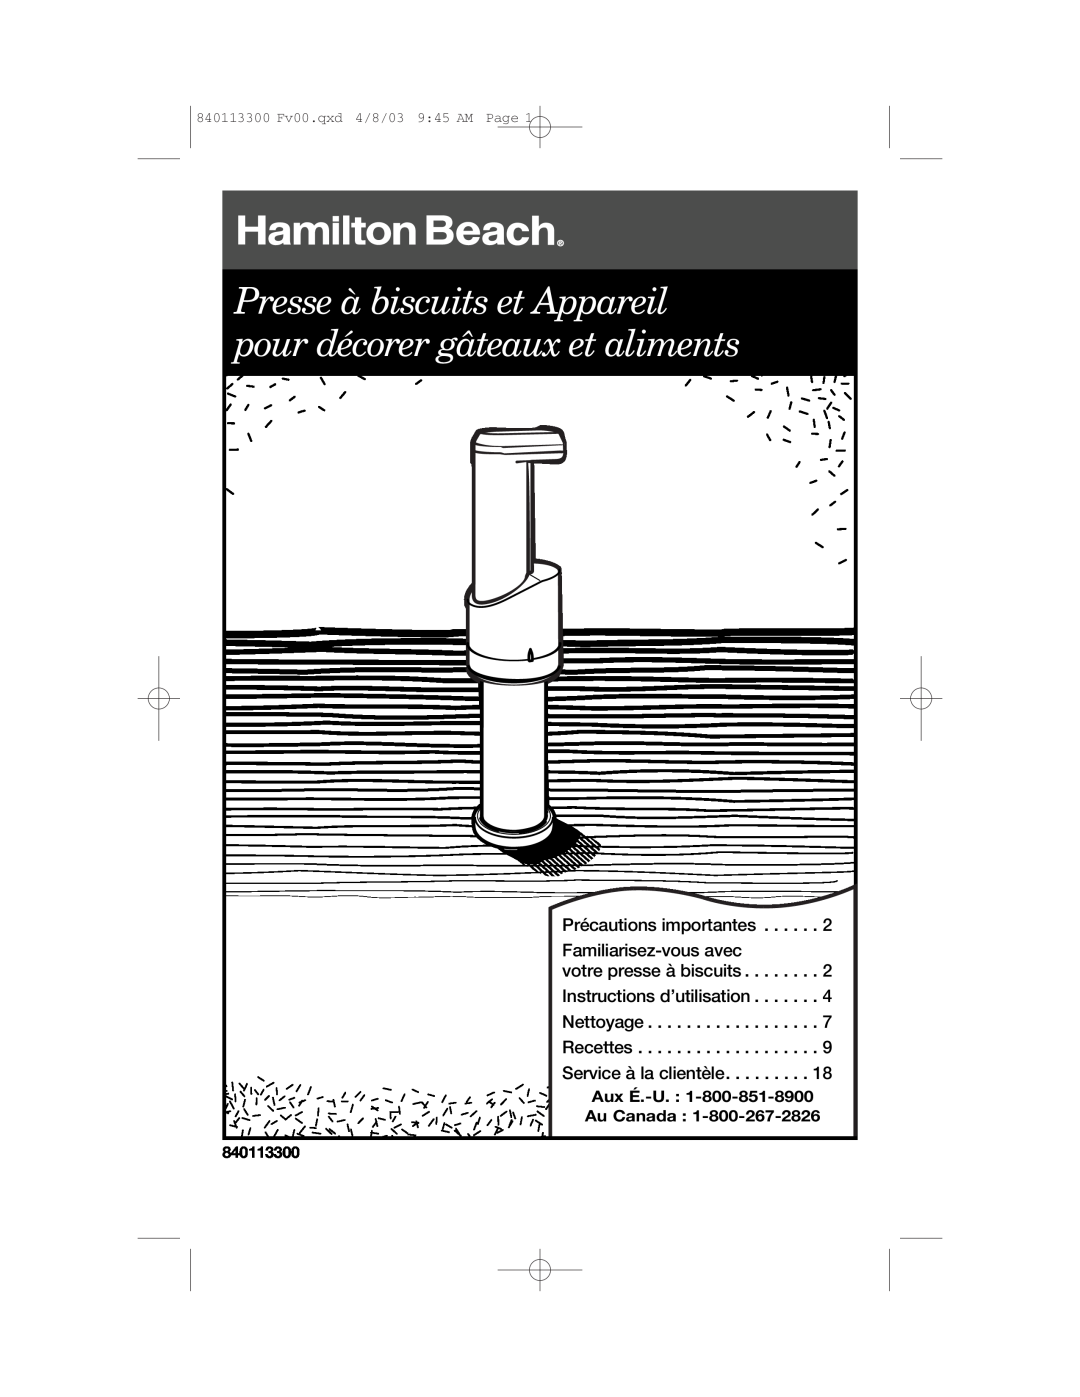 Hamilton Beach 840113300 Presse à biscuits et Appareil pour décorer gâteaux et aliments, Aux É.-U Au Canada 